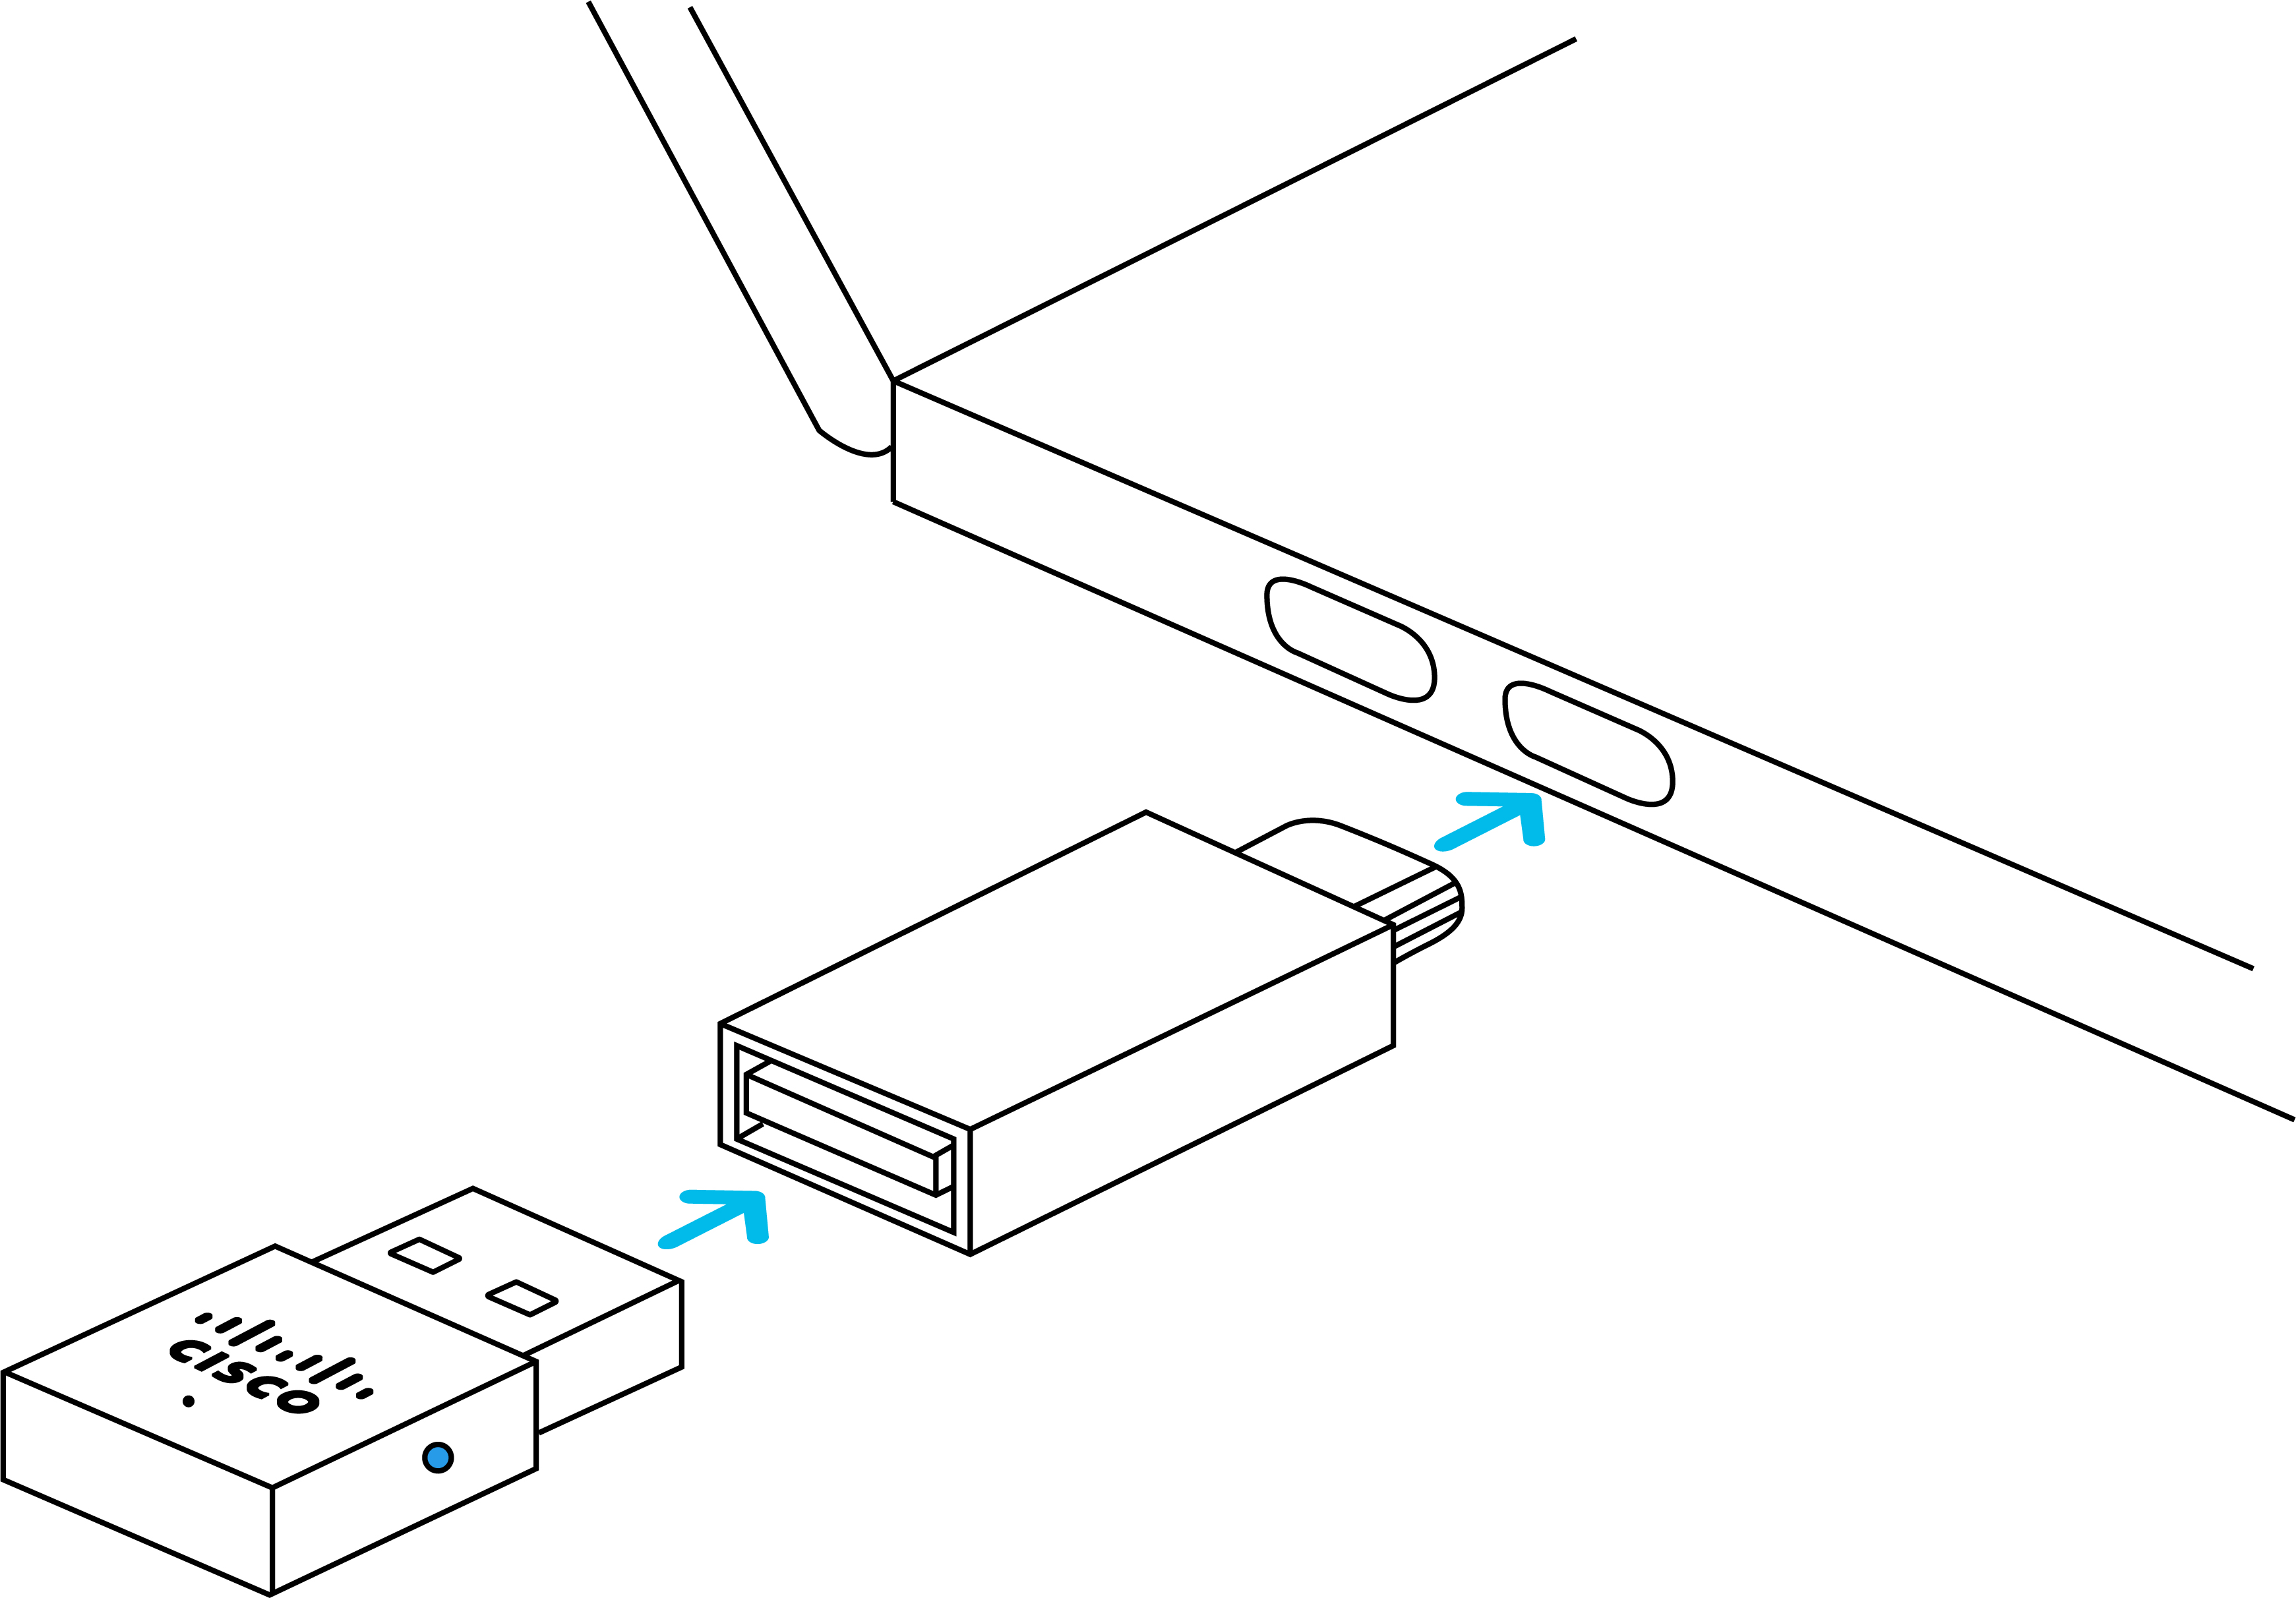 USB HD 適配器和 USB-C 適配器